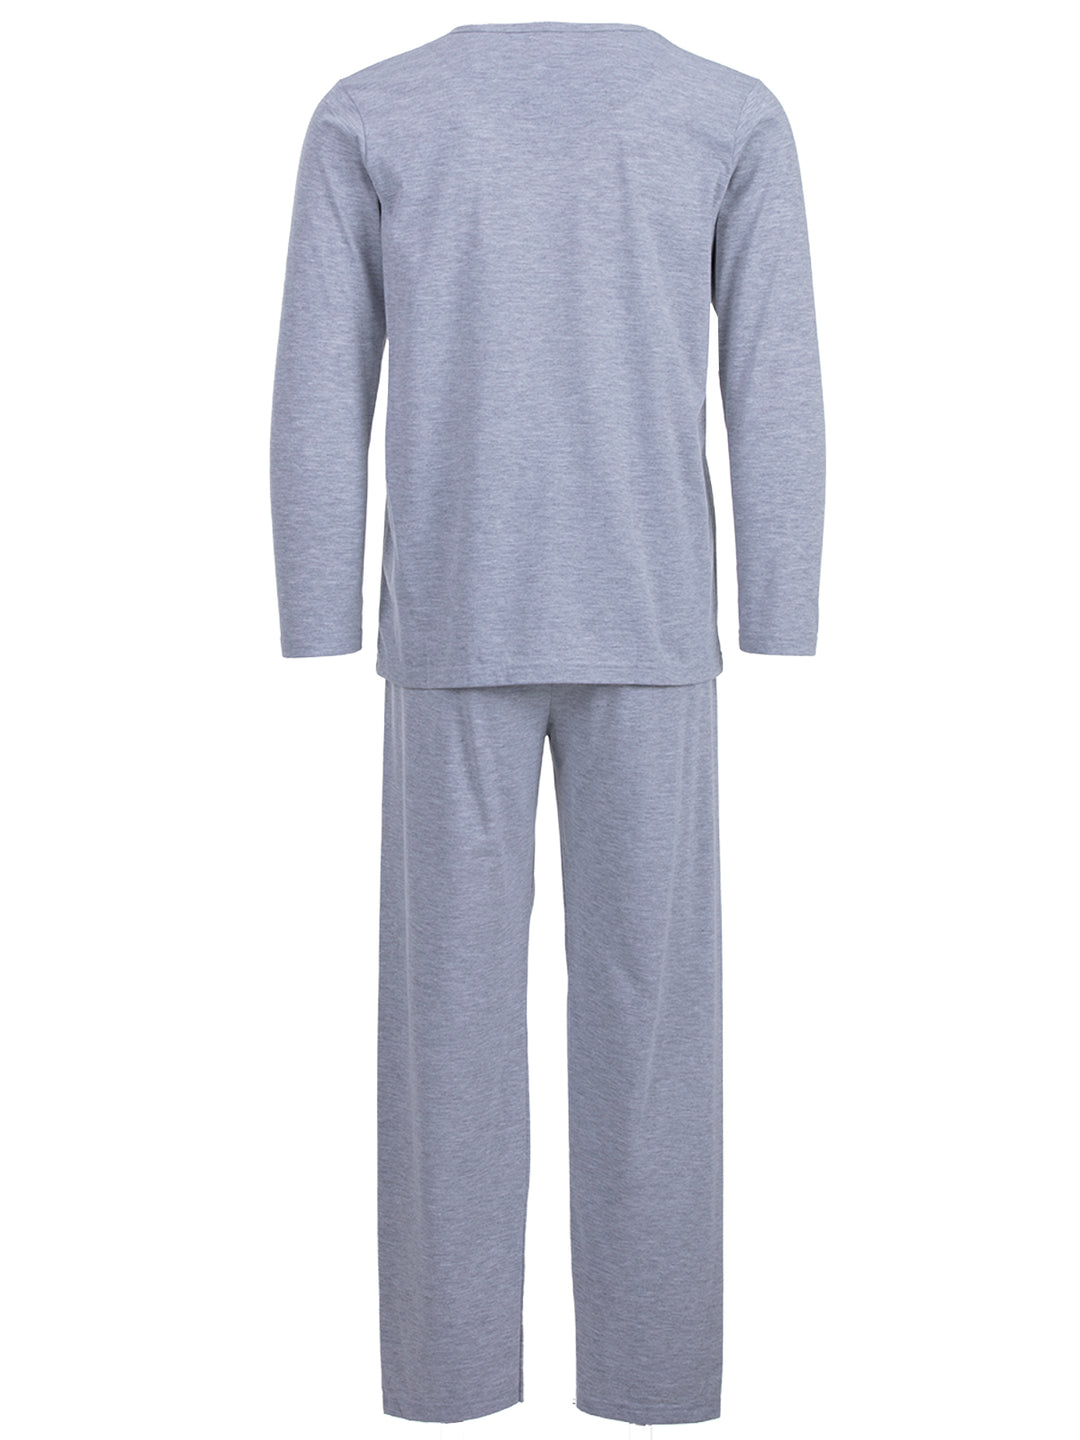 Pyjama Set Langarm - Colorado 96